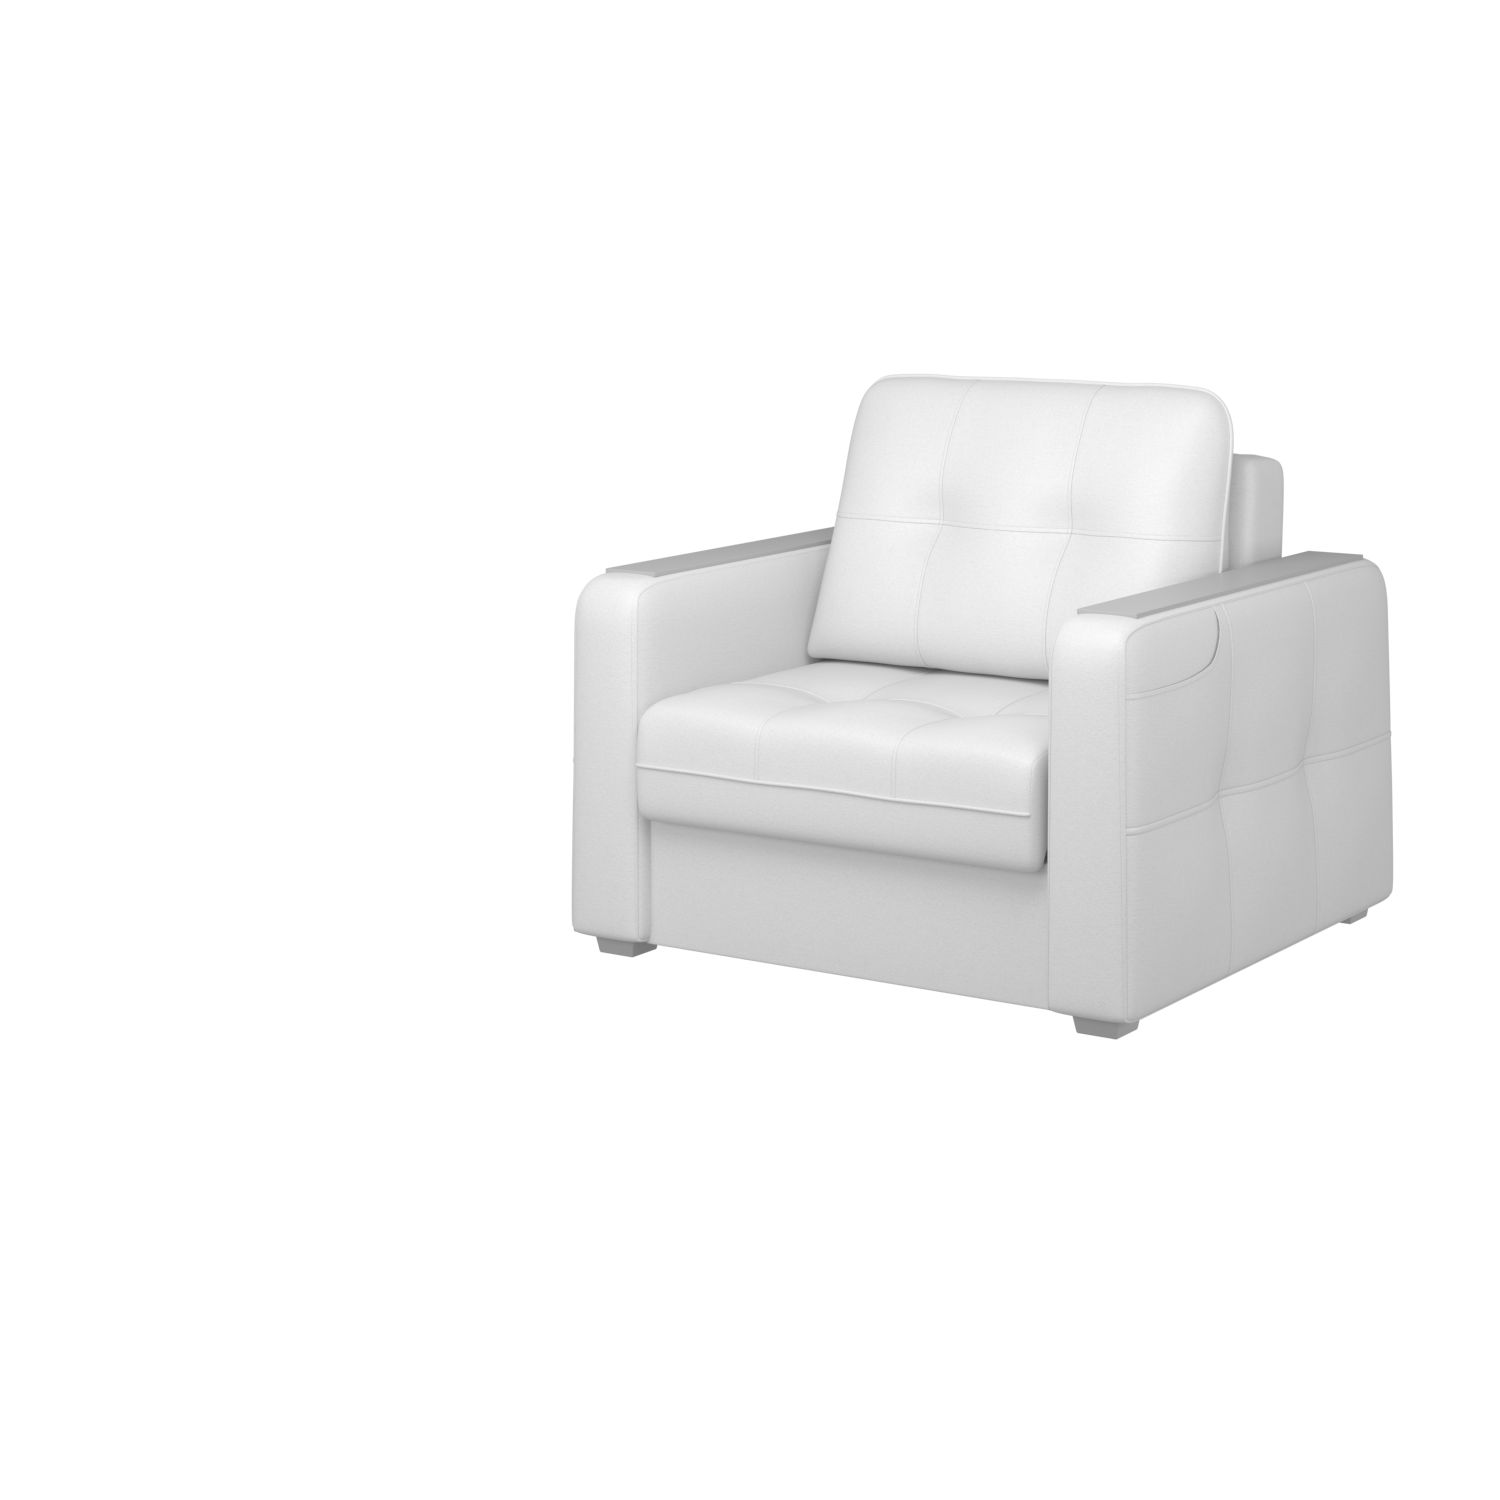 Мягкое кресло с ящиком Киль-3, кКЛ01.вл04.04у